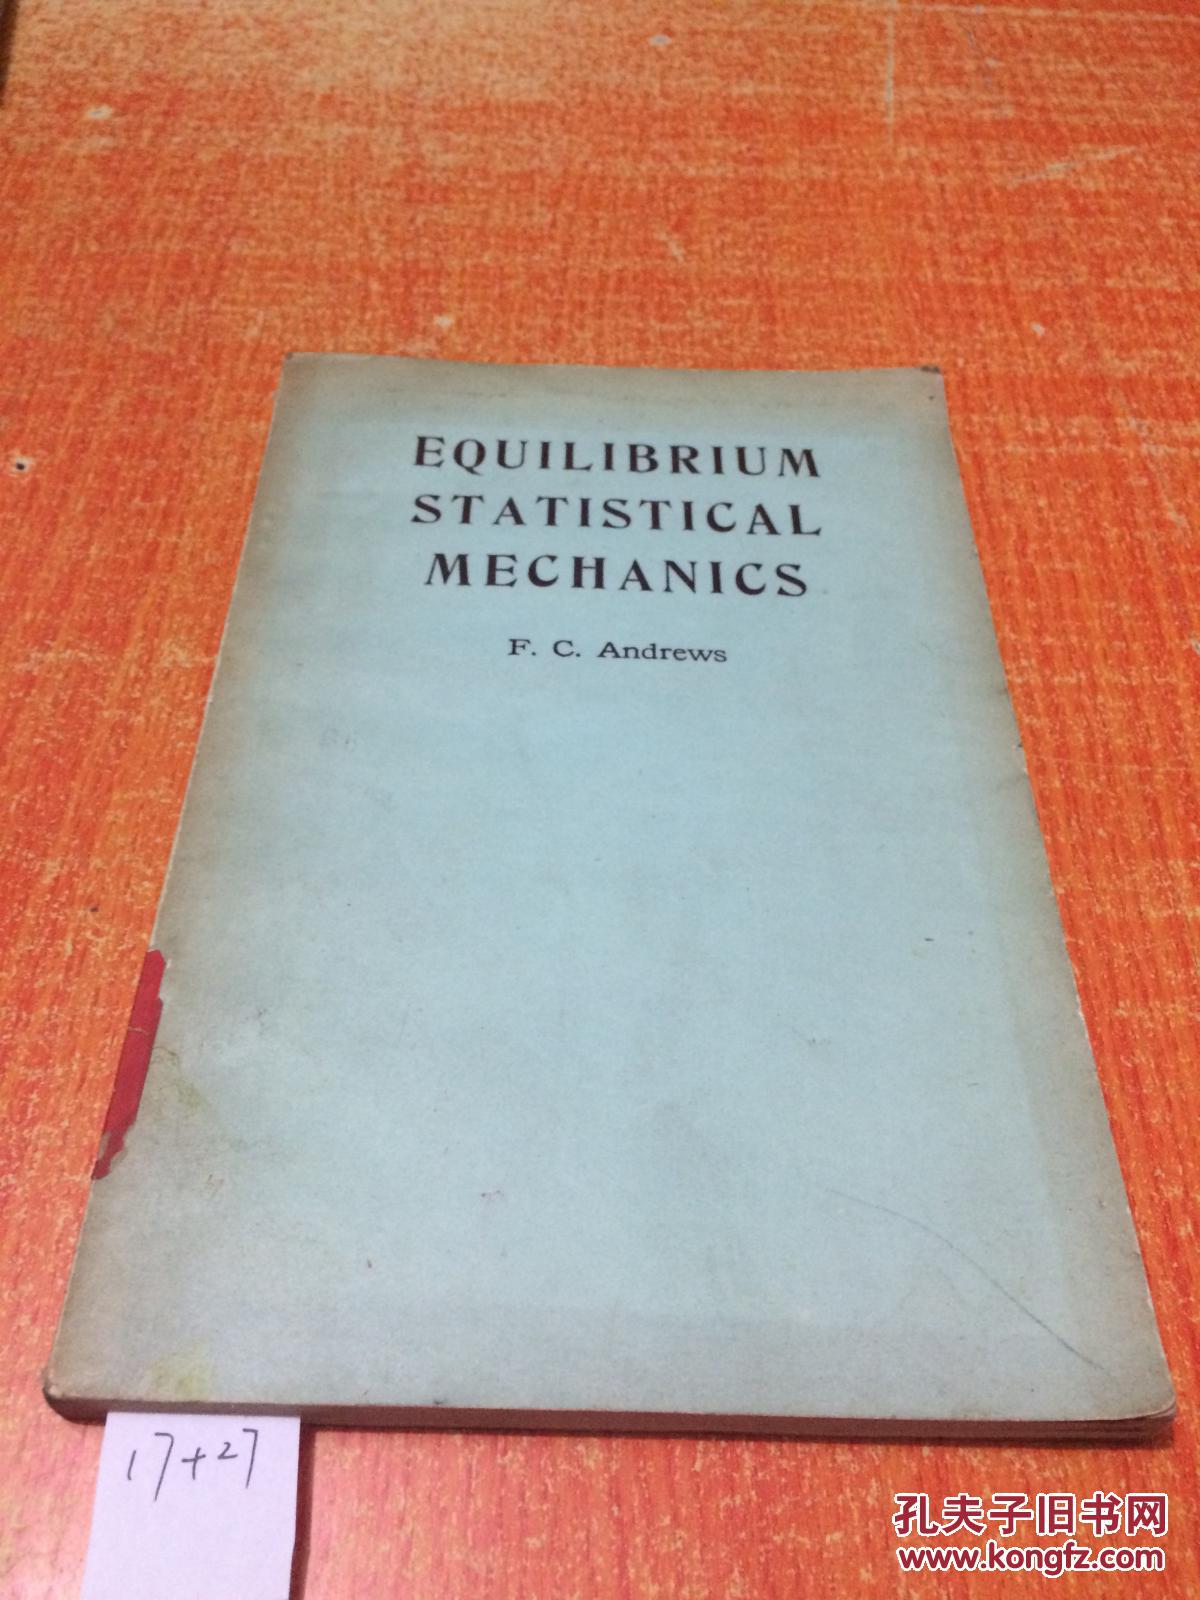 EQUILIBRIUM STATISTICAL MECHANICS